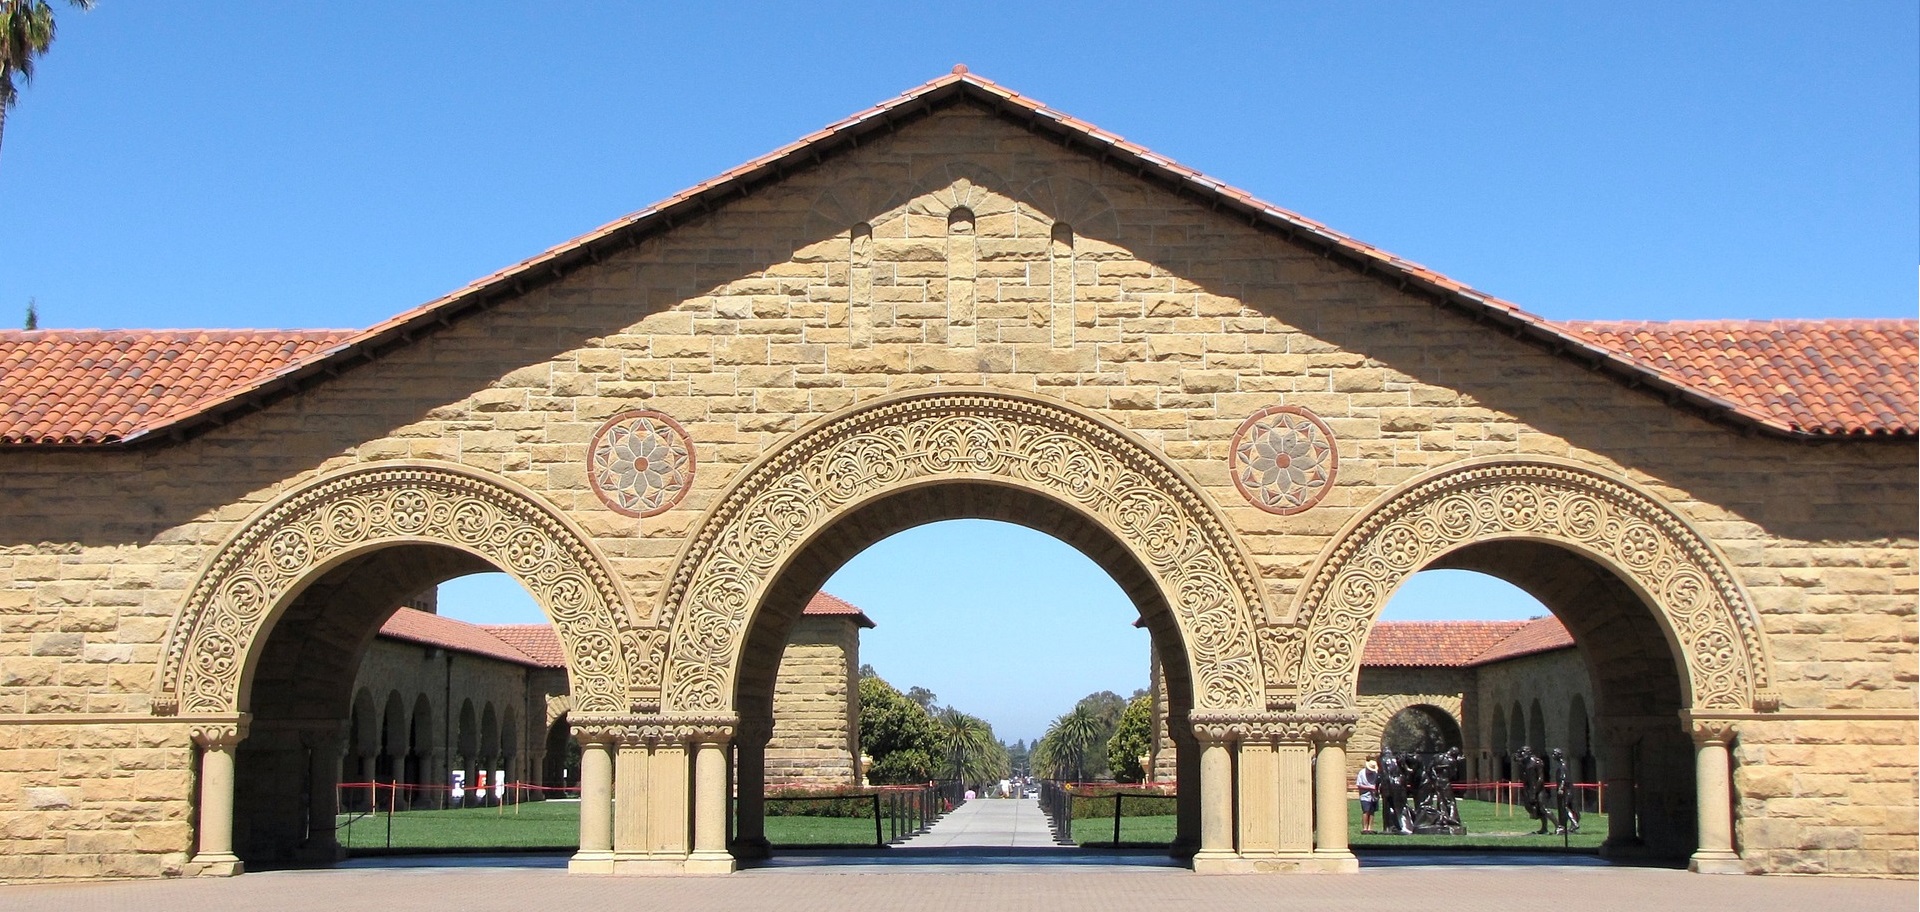 Por dentro de Stanford